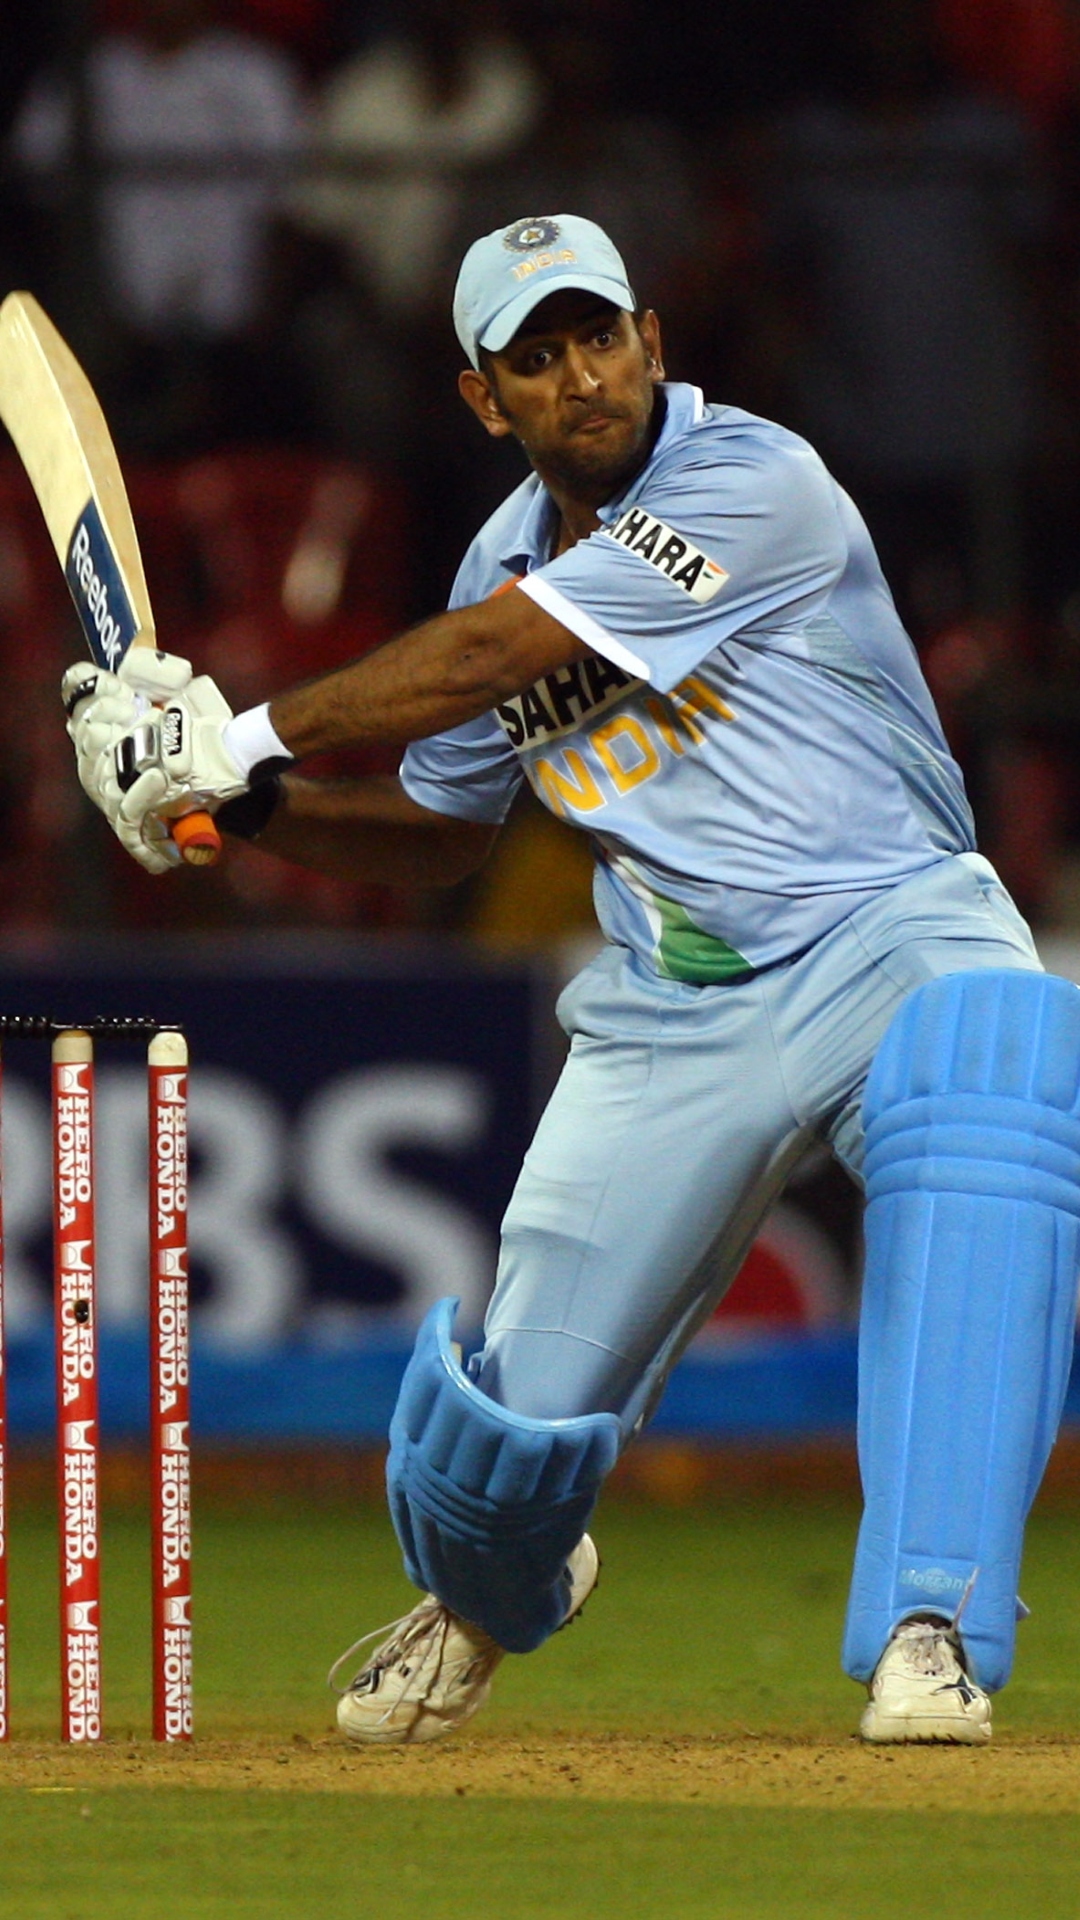 भारत-ऑस्ट्रेलिया वनडे सीरीज में सबसे ज्यादा छक्के लगाने वाले खिलाड़ियों की लिस्ट 